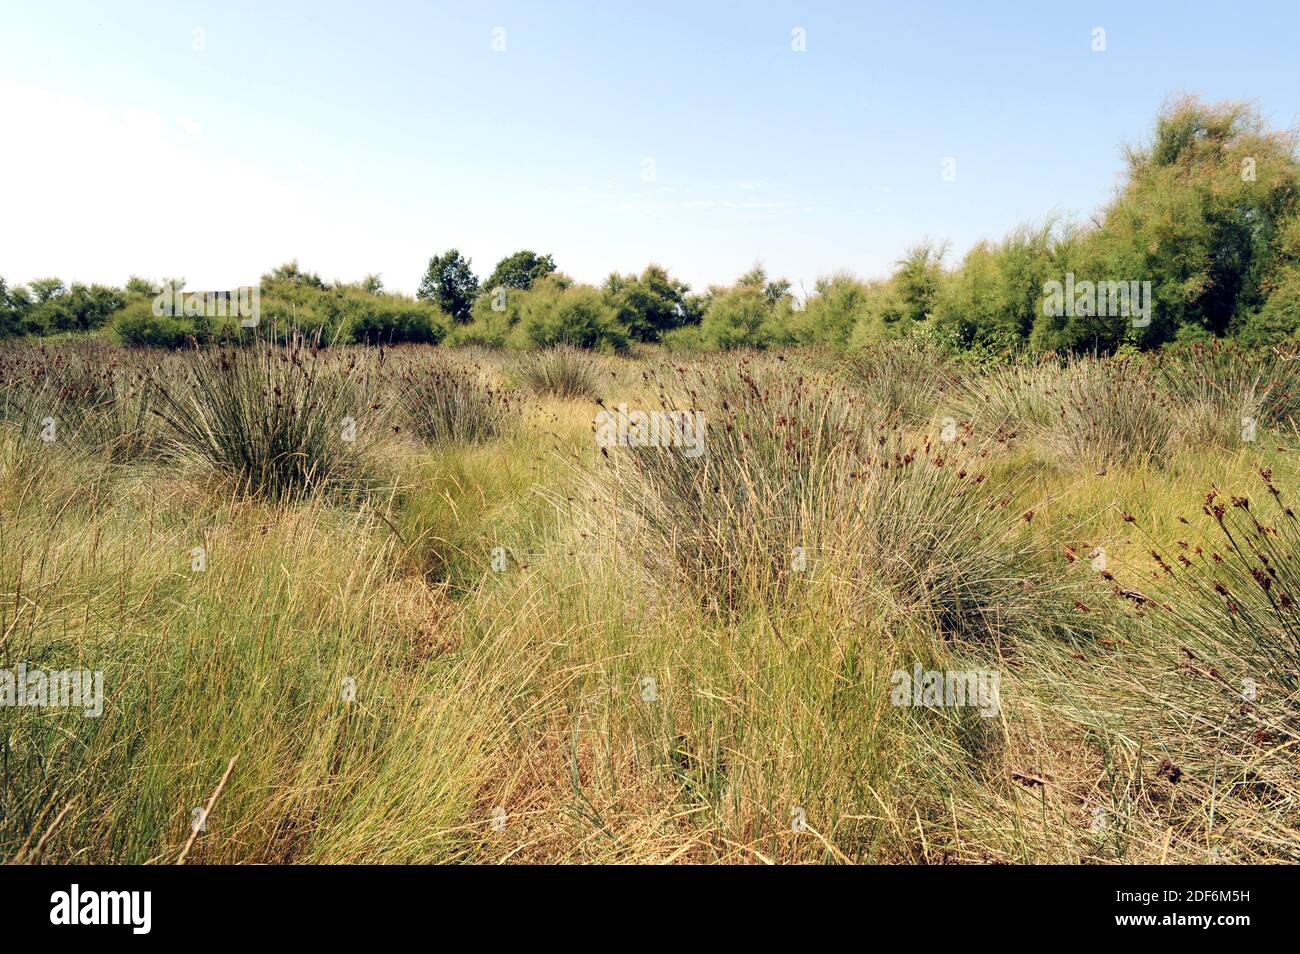 La fiebre espinosa o la fiebre aguda (Juncus acutus) es una hierba perenne nativa de las dunas, humedales y marismas de Europa, el norte de África, el oeste de Asia y. Foto de stock